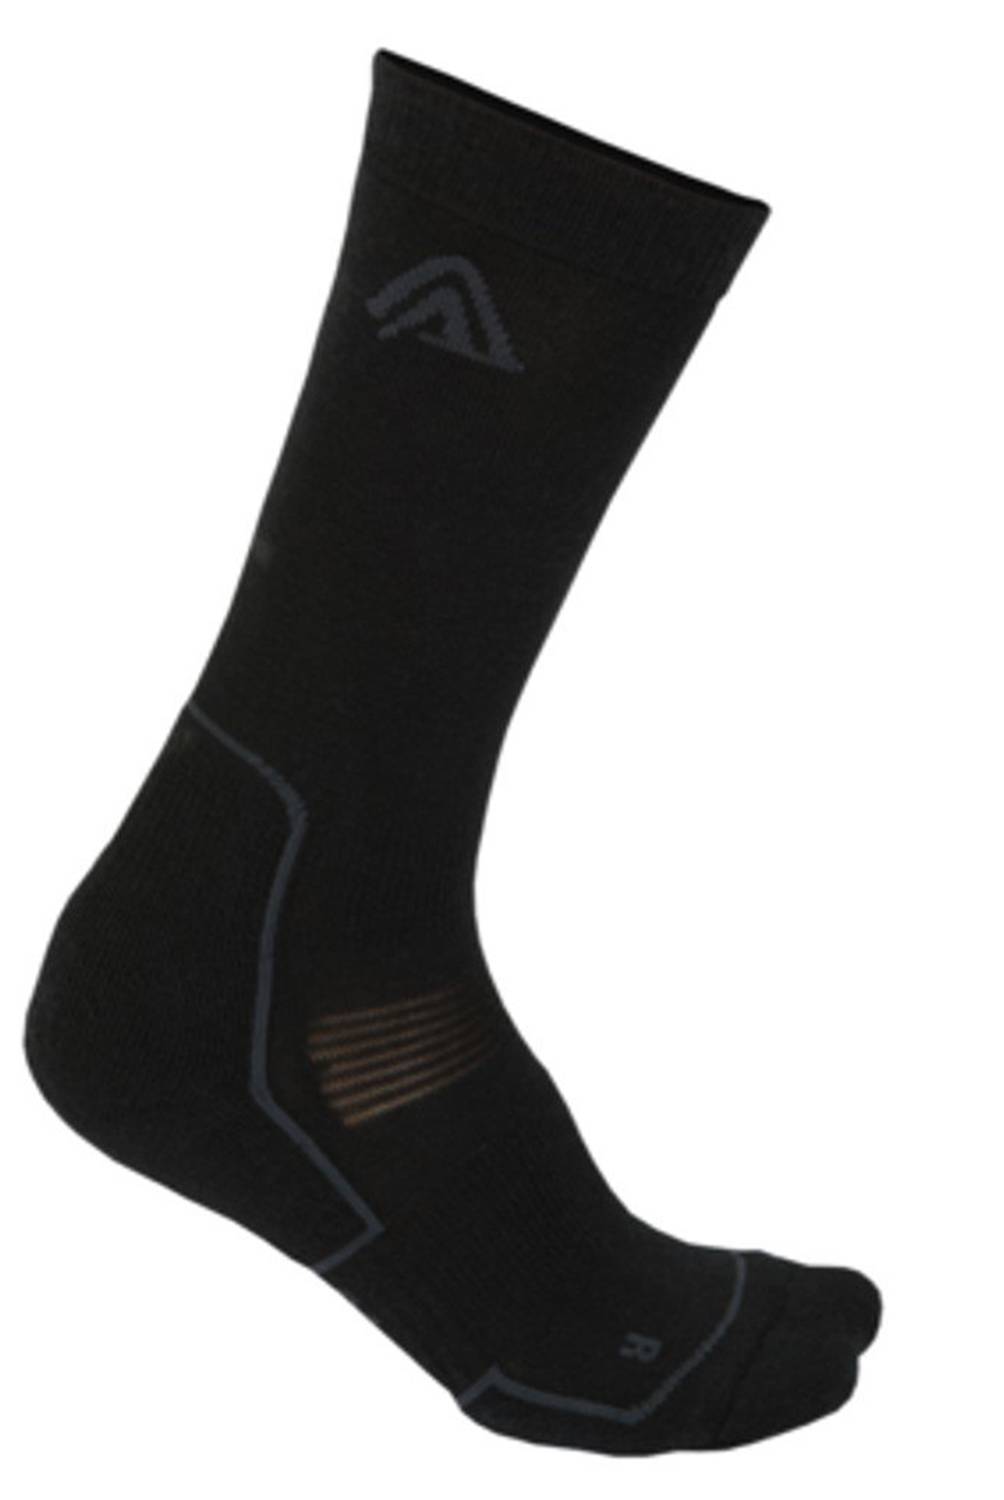 ACLIMA - Calcetines Lana Merino Trekking Socks